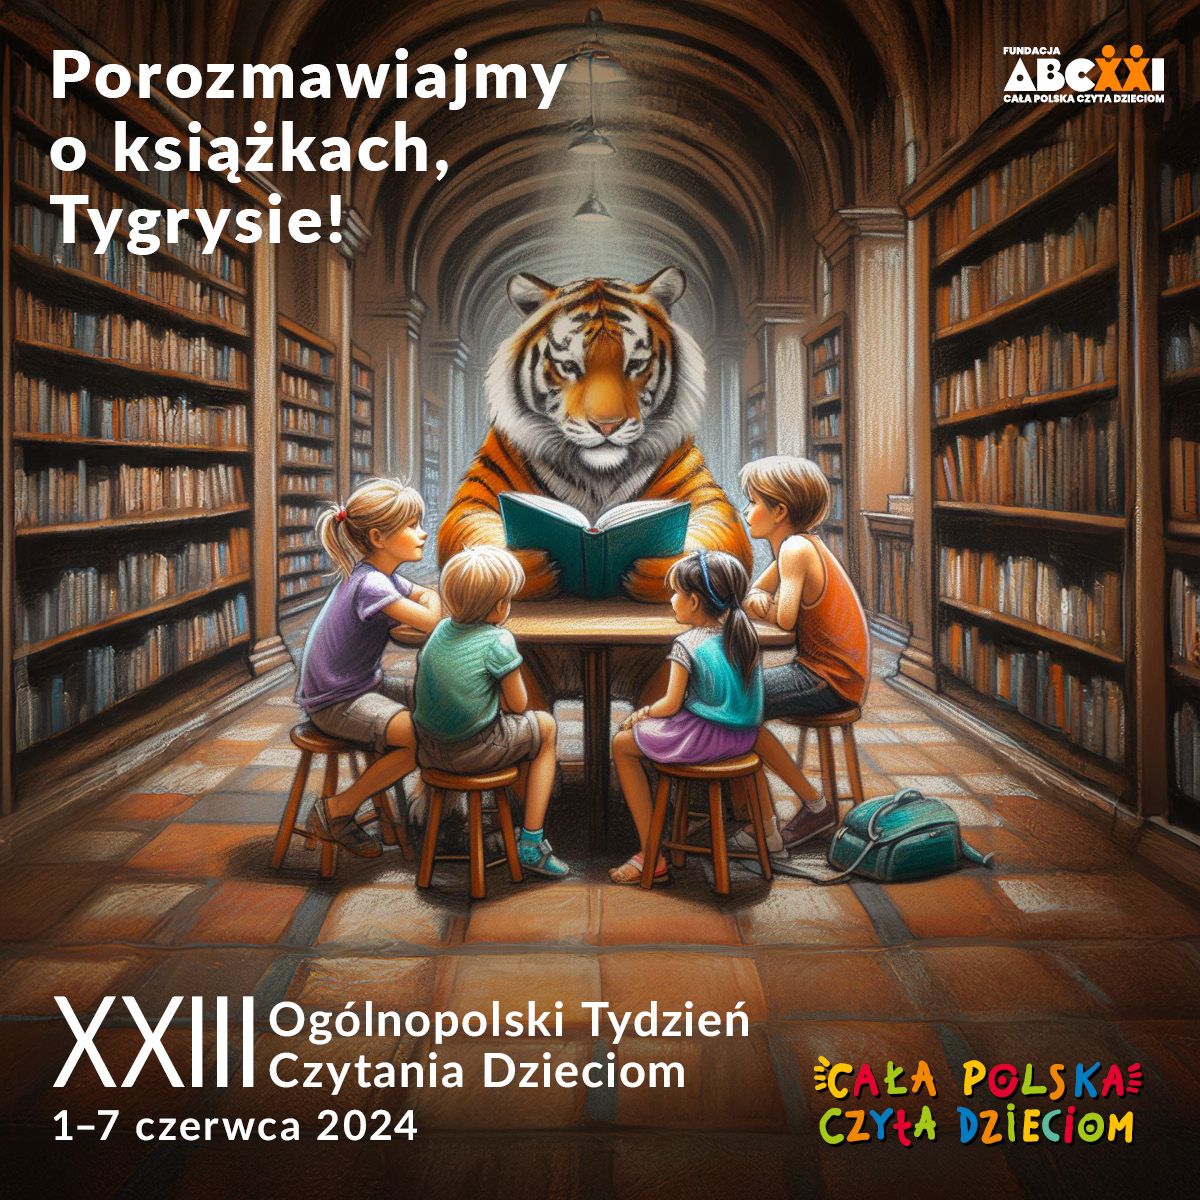 XXIII Ogólnopolski Tydzień Czytania Dzieciom - Porozmawijmy O Książkach, Tygrysie! - Kwadrat